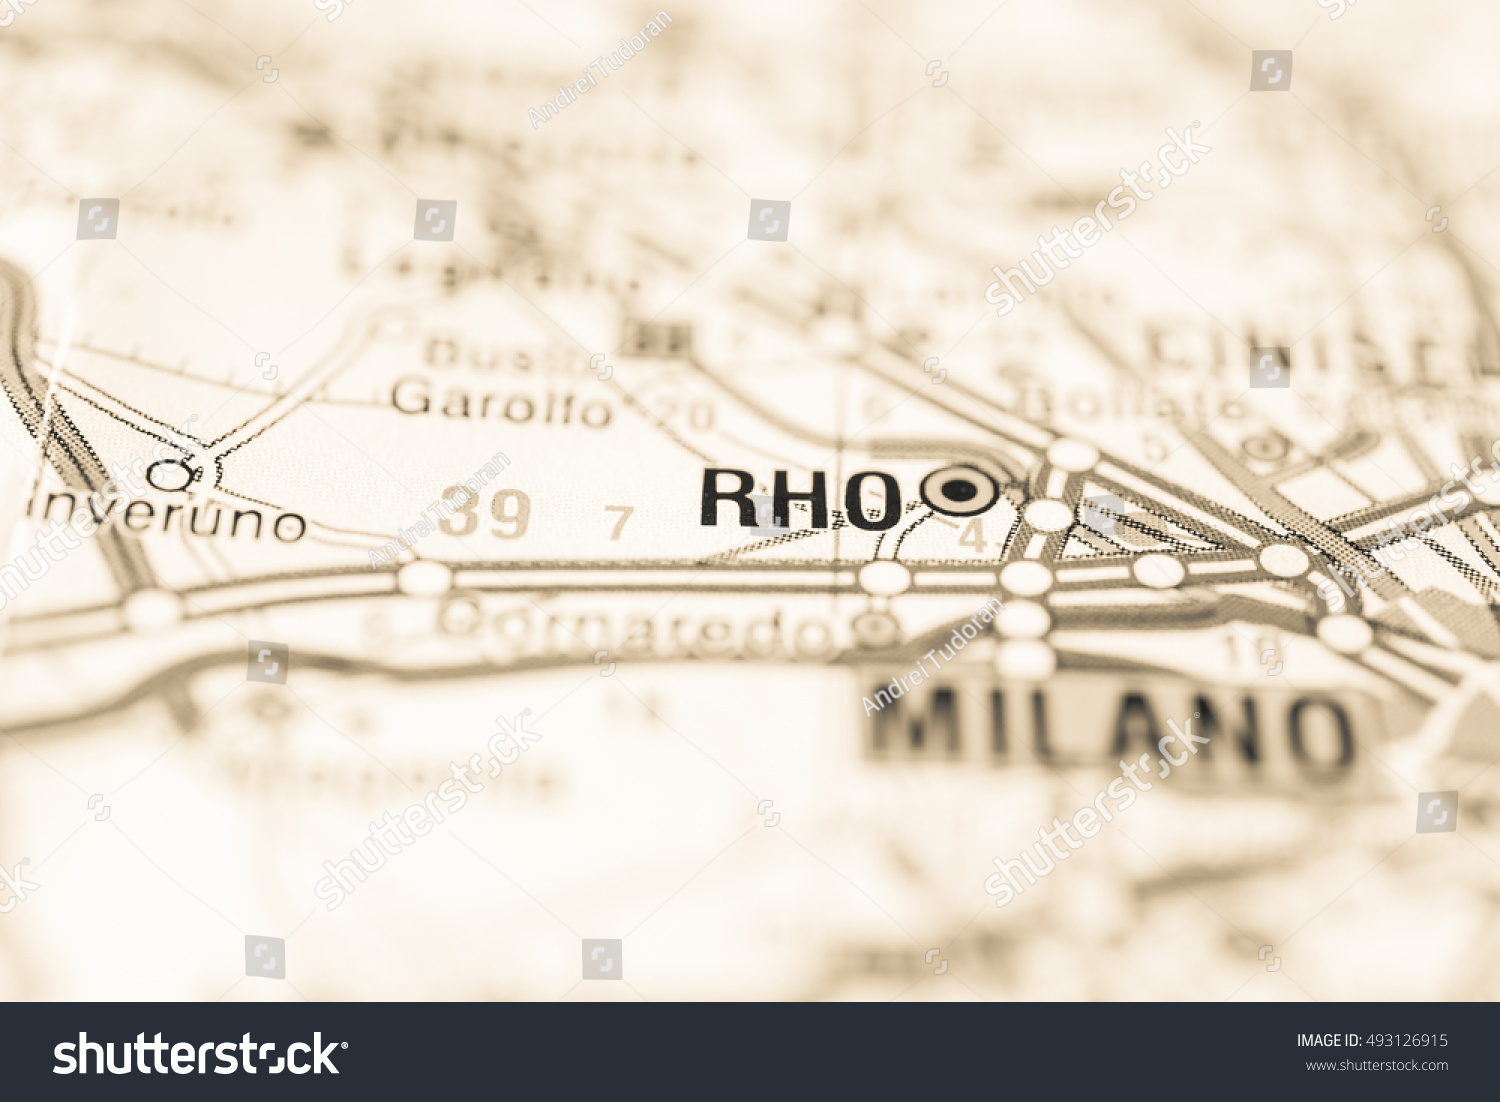 Rho, Italy. #493126915